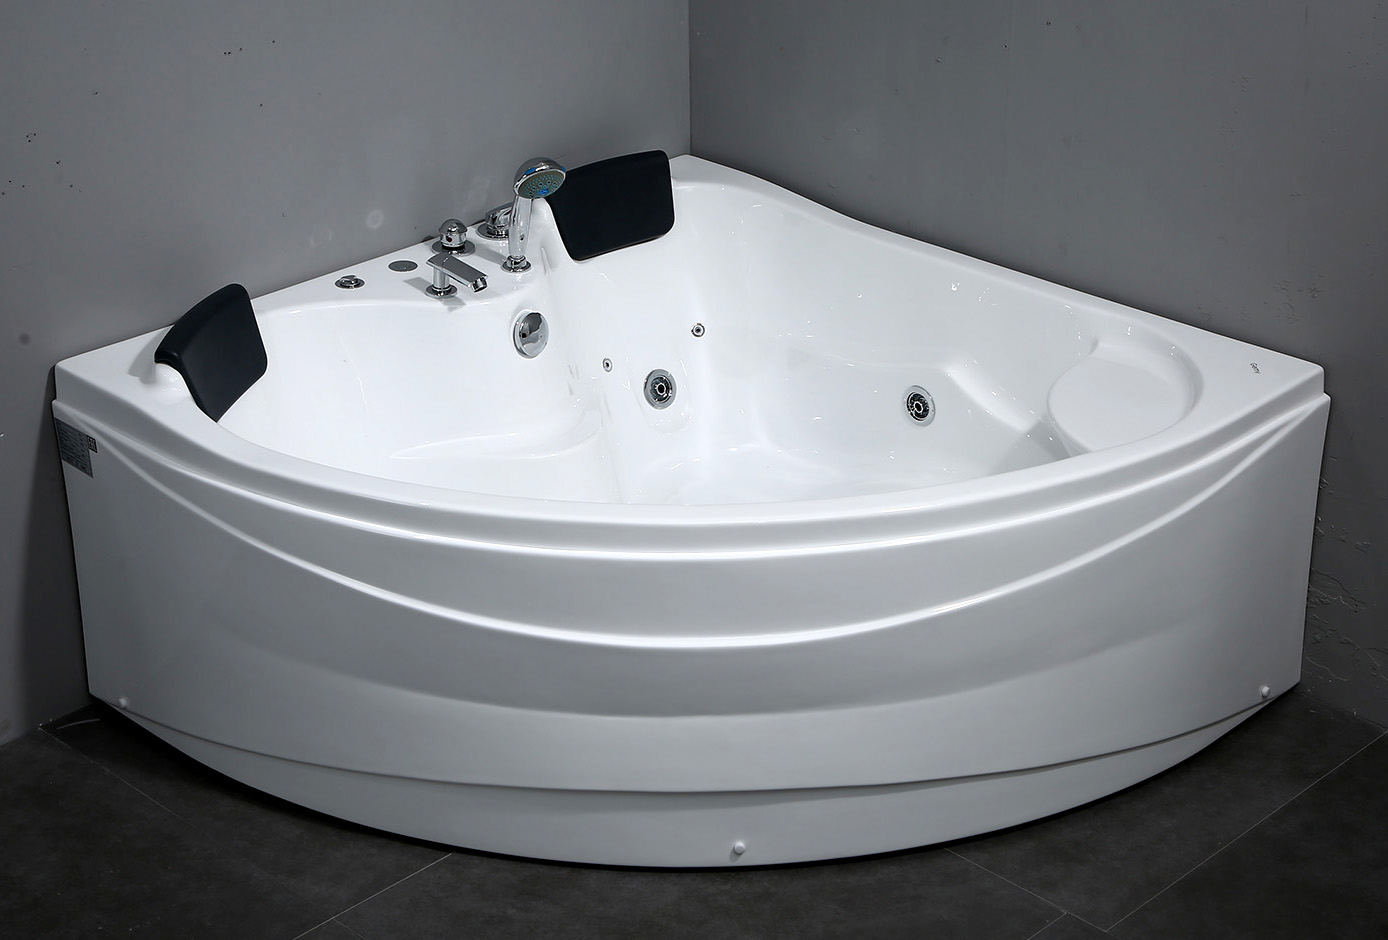 Акриловая ванна Gemy G9041 B 150x150 см